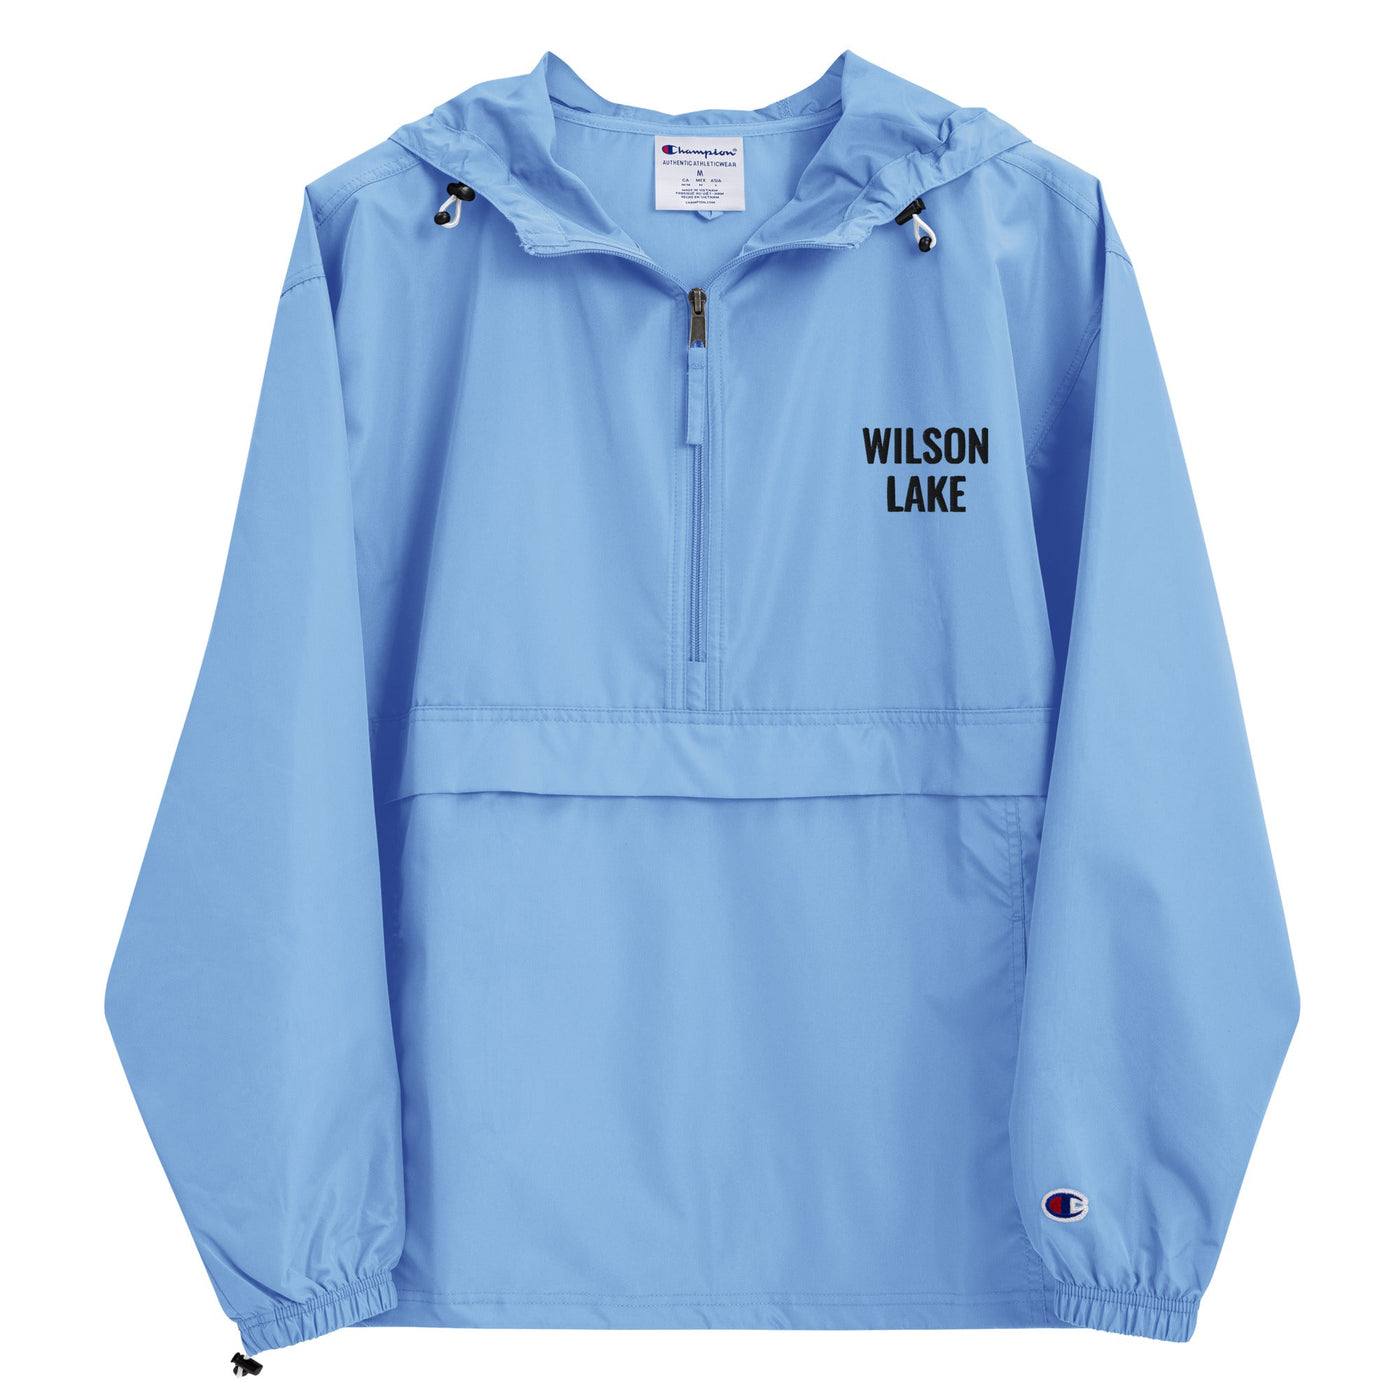 Wilson Lake Jacket - Ezra's Clothing